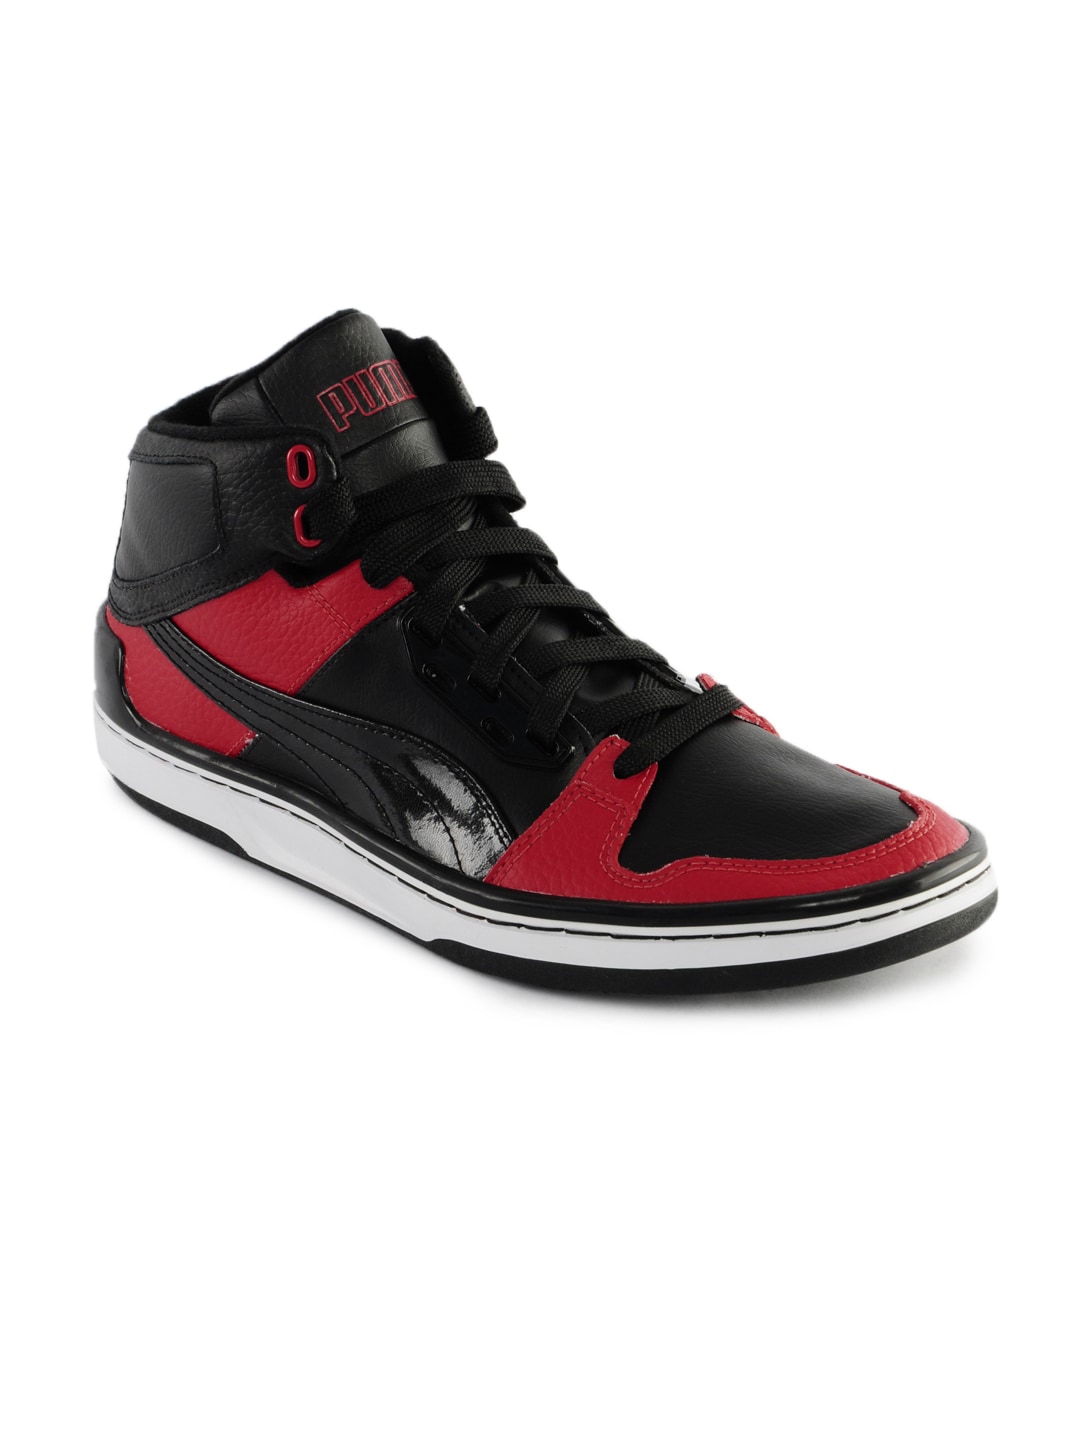 Puma Men Royal Evo Black & Red Shoes